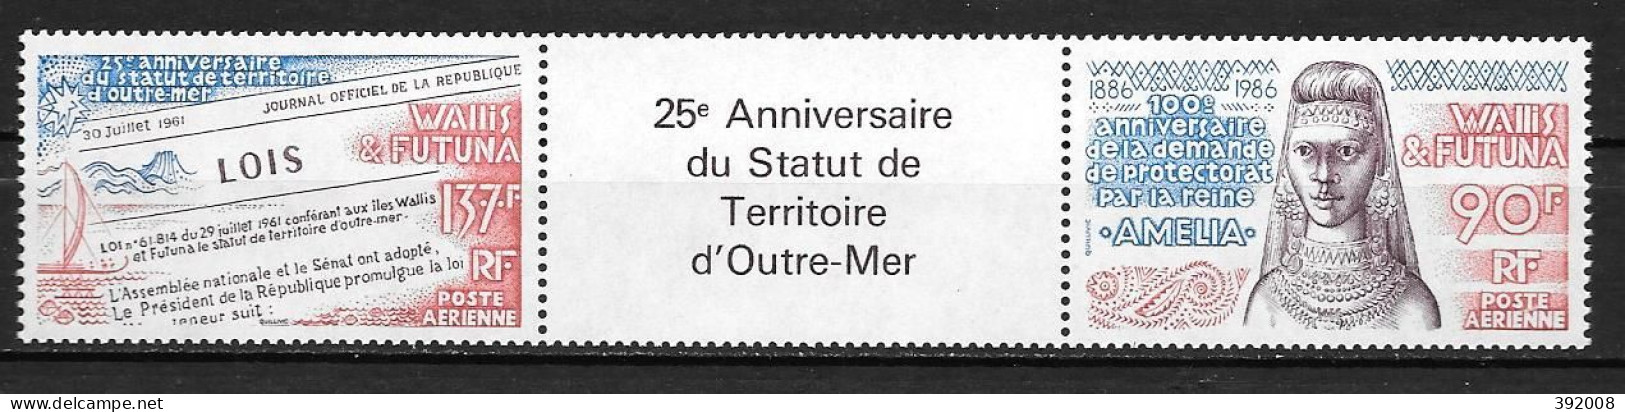 PA - 1986 - 152A**MNH - 100 Ans De La Demande De Protectorat Par La Reine Amélia - Nuevos